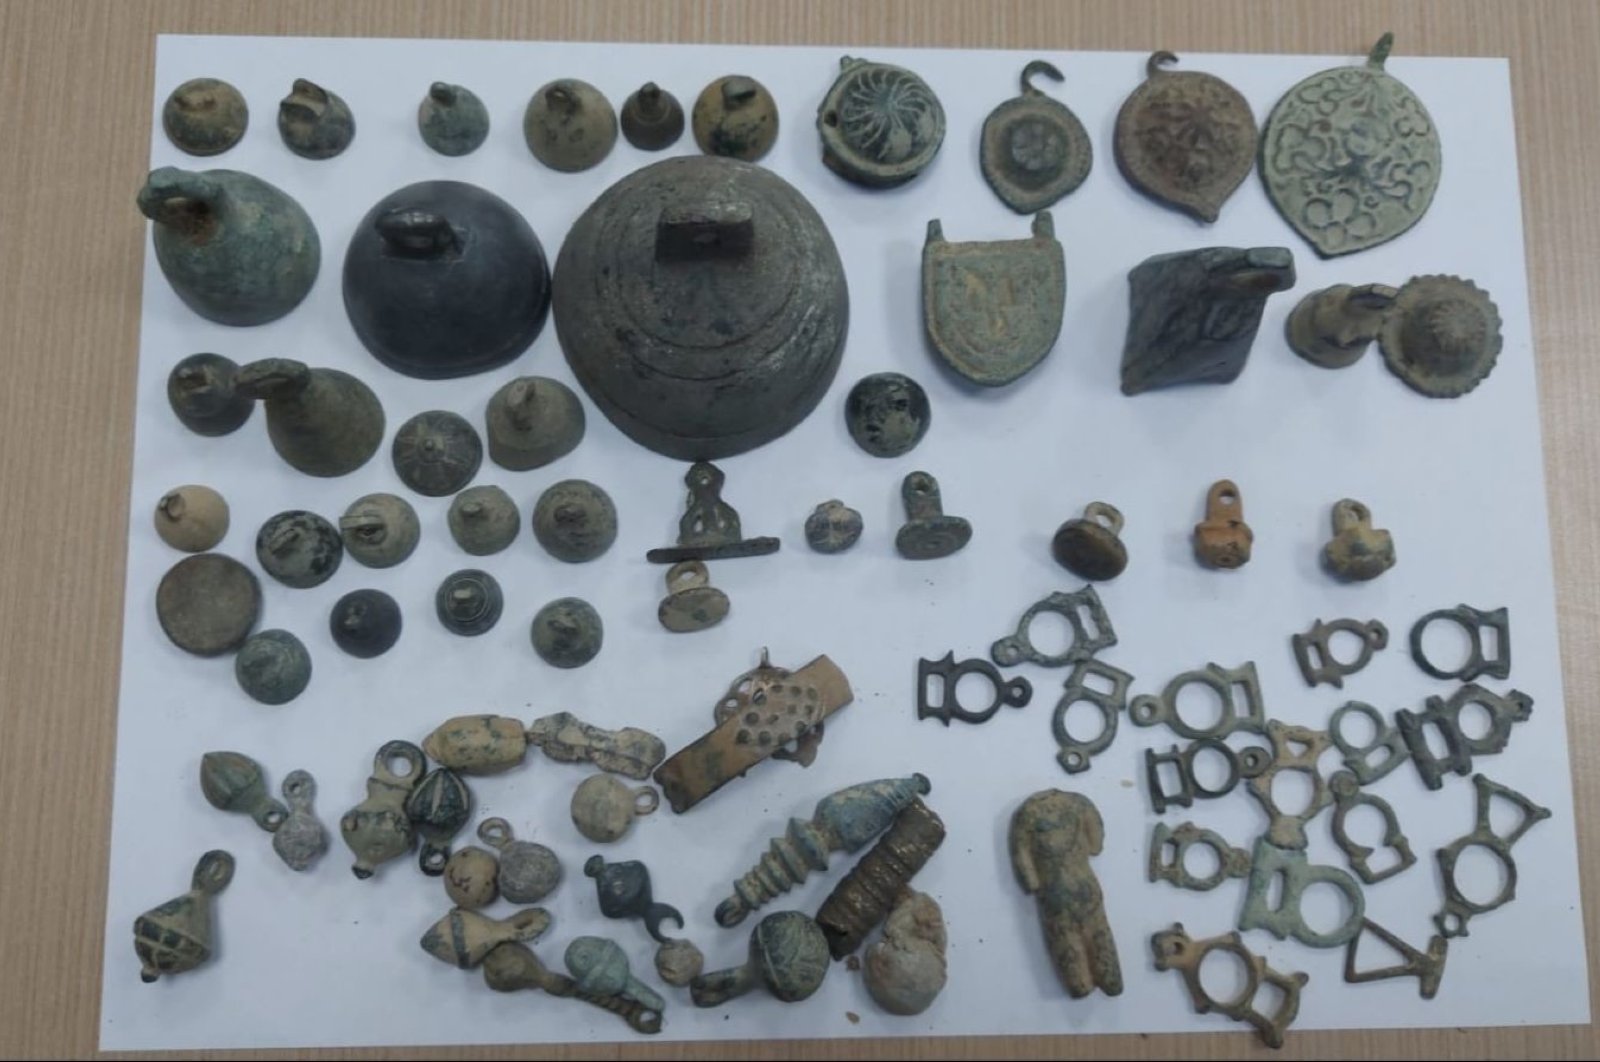 92 artefak selundupan disita di Izmir, 1 ditahan